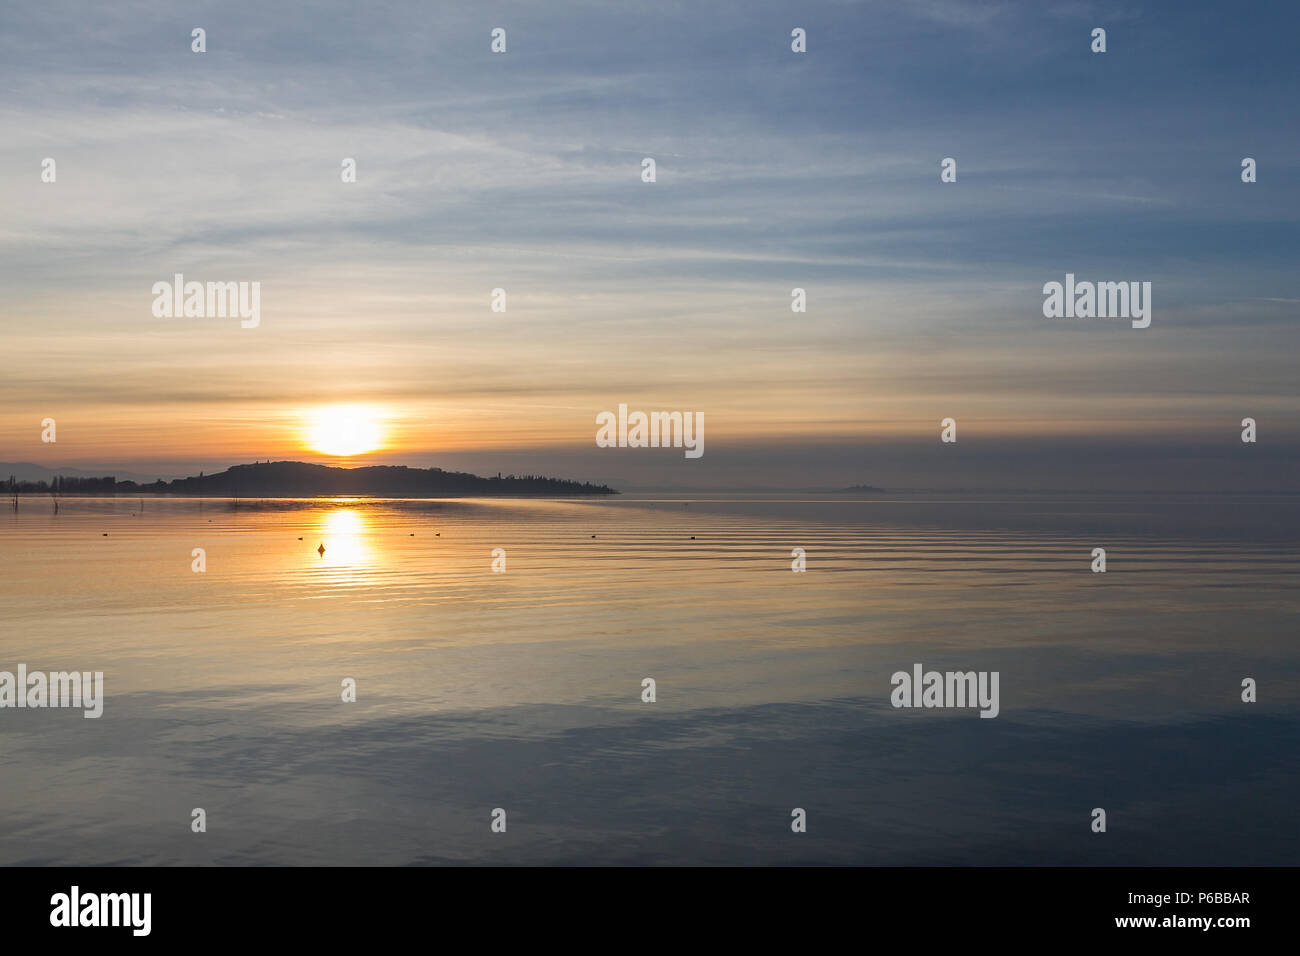 Una ripresa di un tramonto su un lago, con il sole che scende dietro un'isola Foto Stock